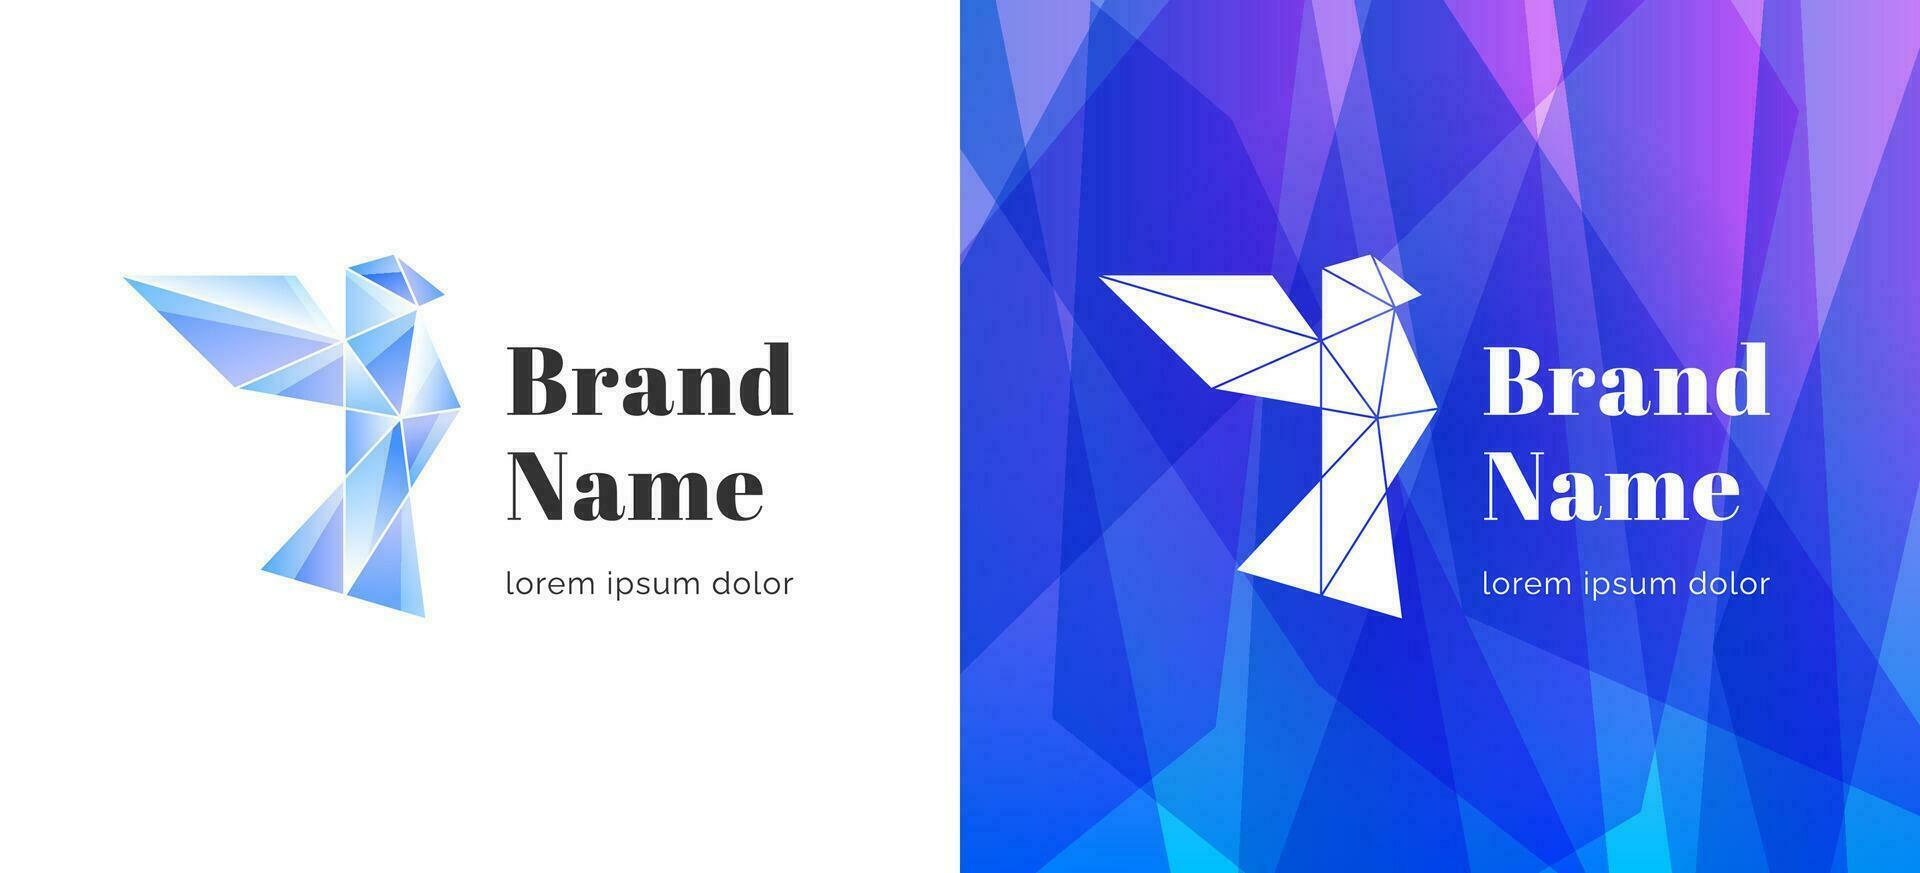 espumoso diamante geométrico volador pájaro forma resumen logo. negocio marca identidad cristal logotipo diseño concepto. de moda empresa corporativo marca vector eps modelo